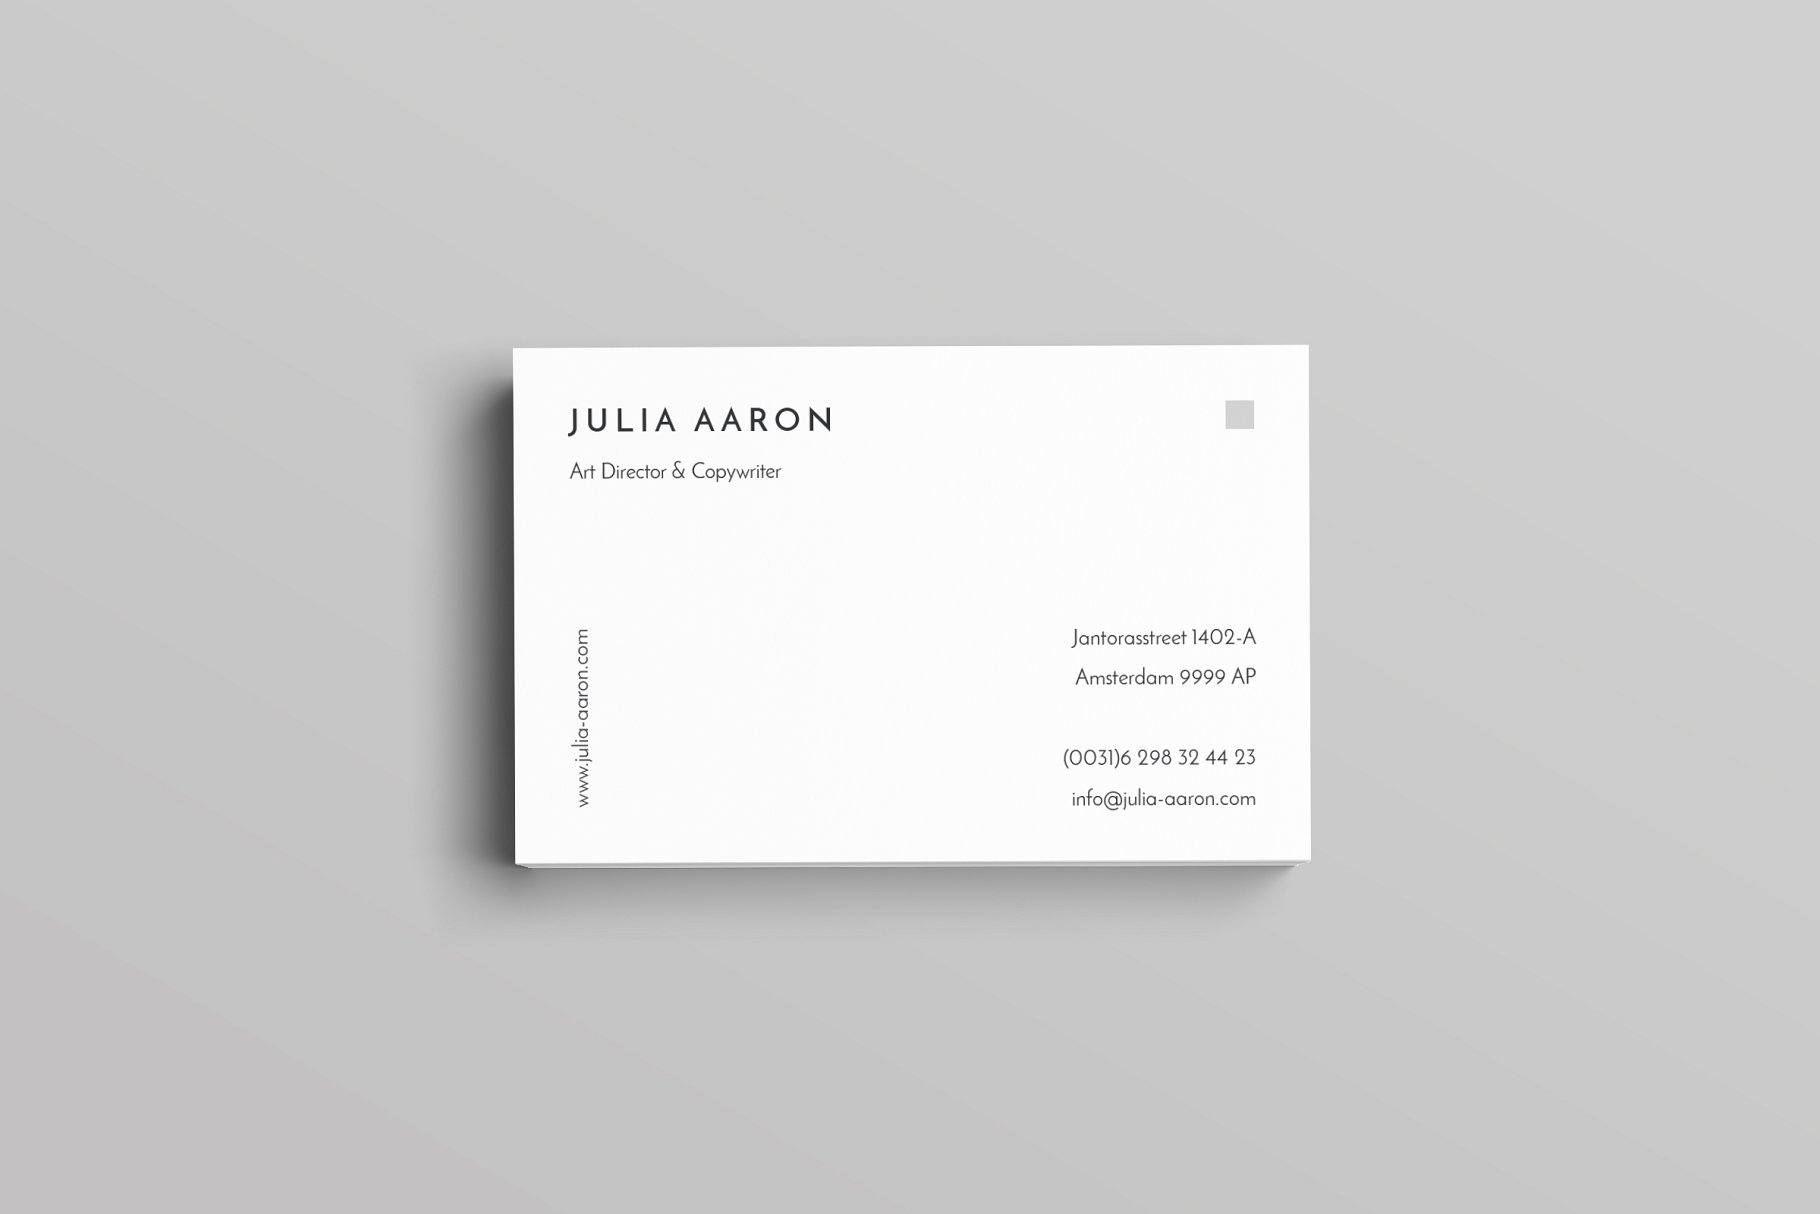 优雅简约风高端企业名片设计模板 Aaron Business Card Template插图(3)